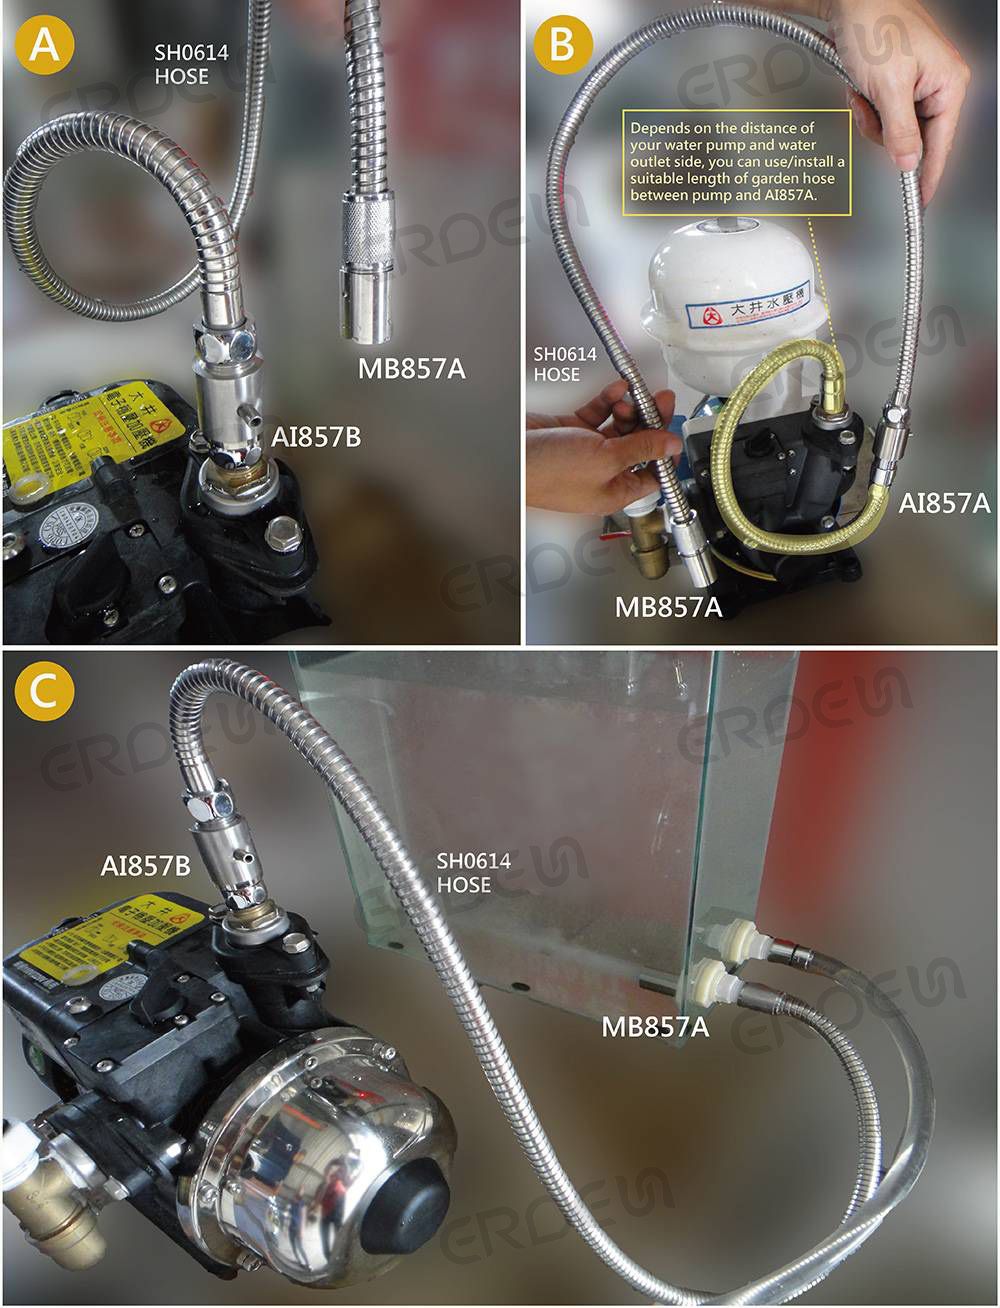 MB858A_Connection du dispositif de purification profonde à microbulles